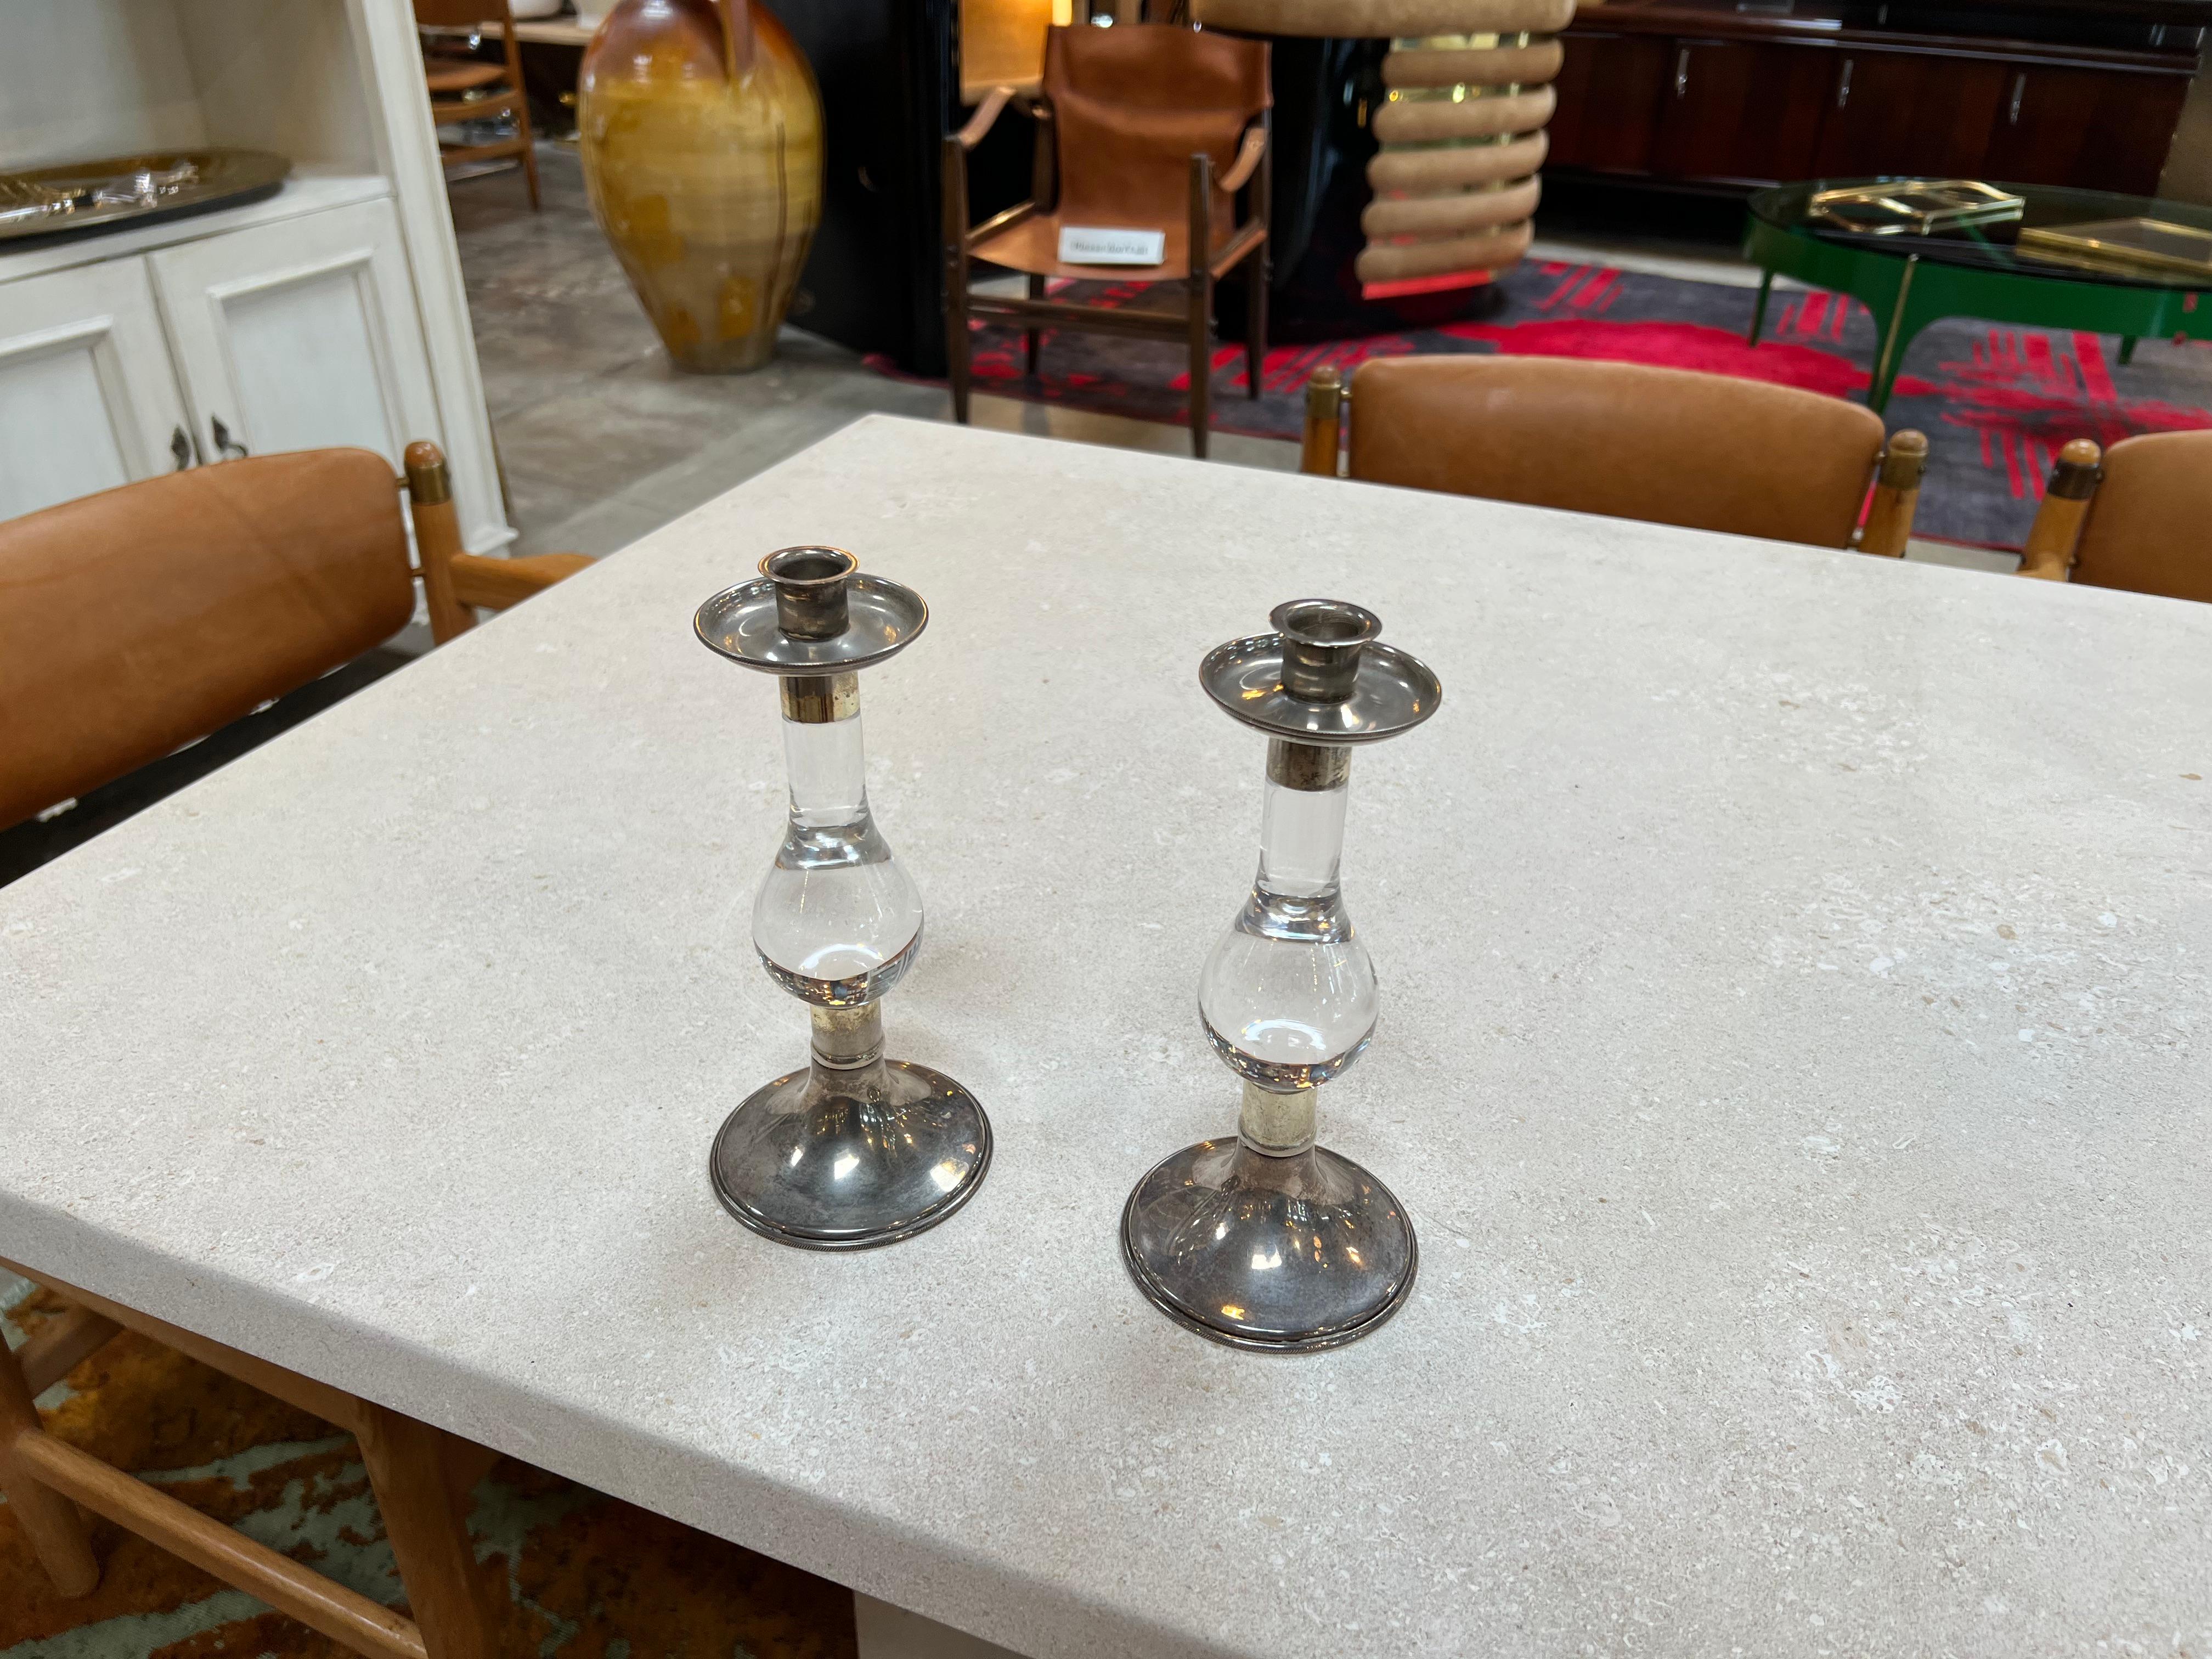 Wir präsentieren ein Paar von 2 italienischen Vintage-Kerzenhaltern aus den 1960er Jahren, eine harmonische Verbindung von Silber und Kristallglas. Diese exquisiten Stücke strahlen zeitlose Schönheit aus. Ihr silberner Ober- und Unterteil versprüht